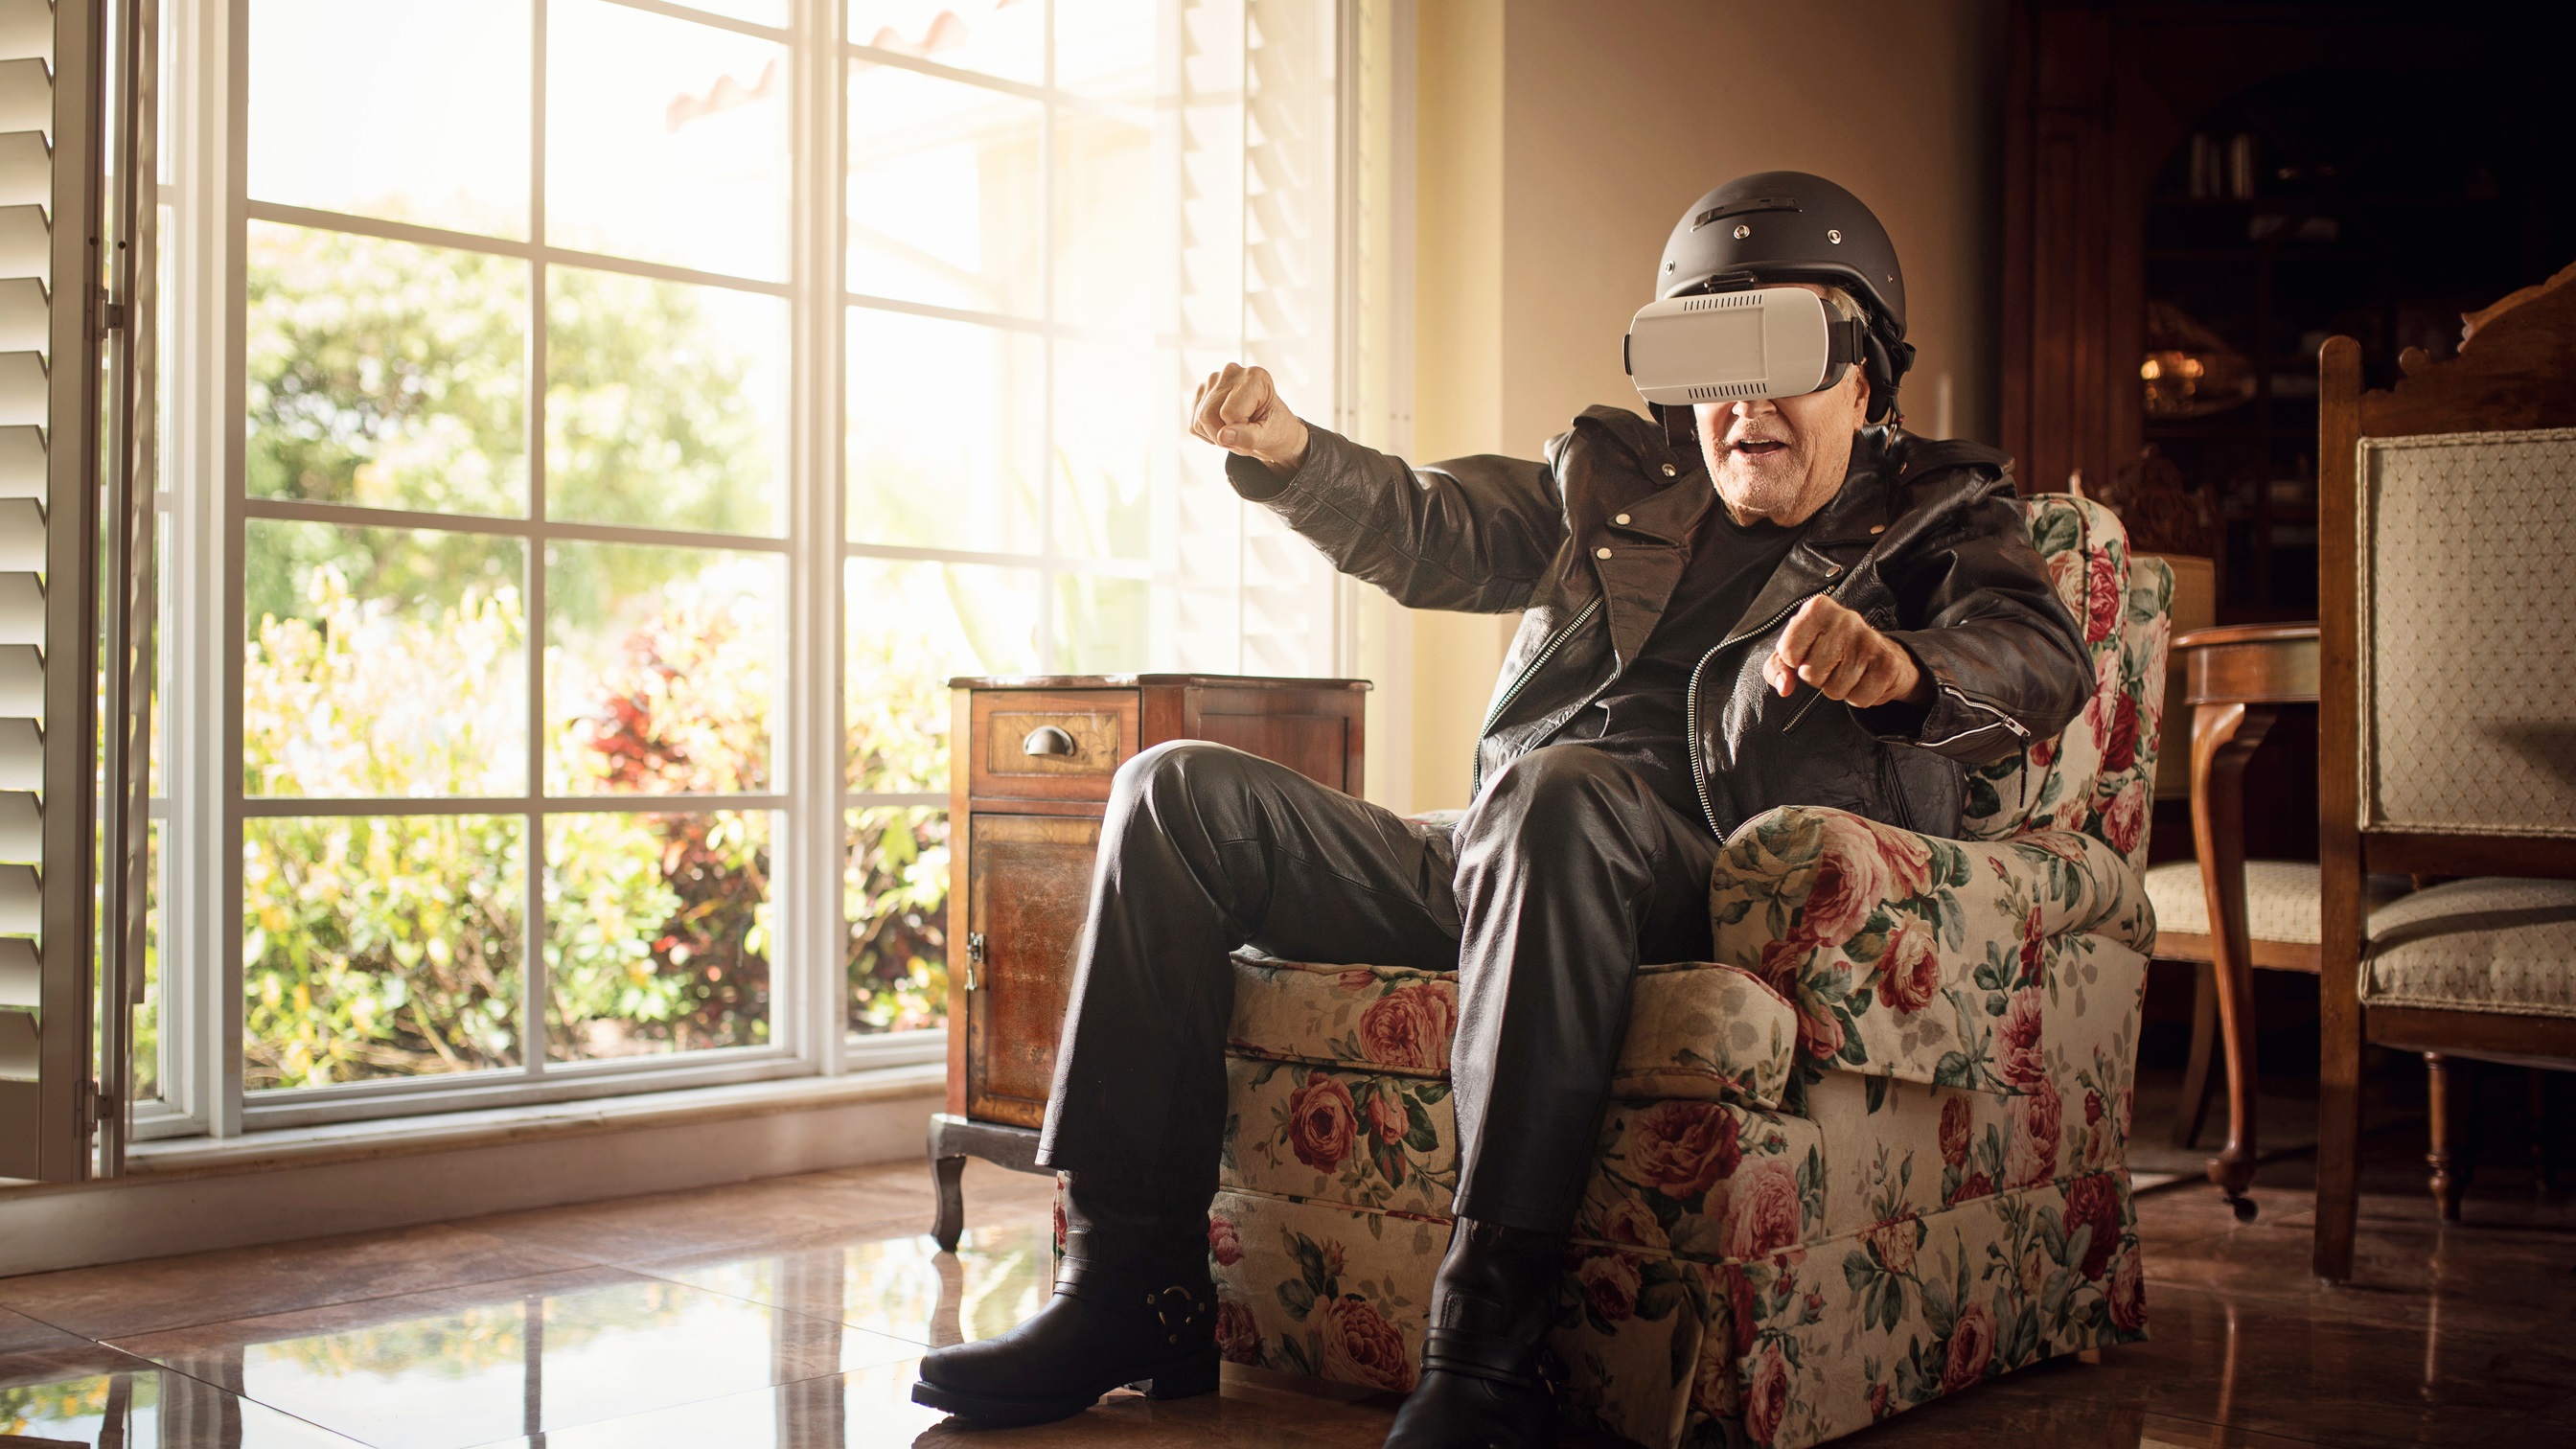 Opa in Lederkombi sitzend auf der Couch mit VR-Brille und am motorradfahren